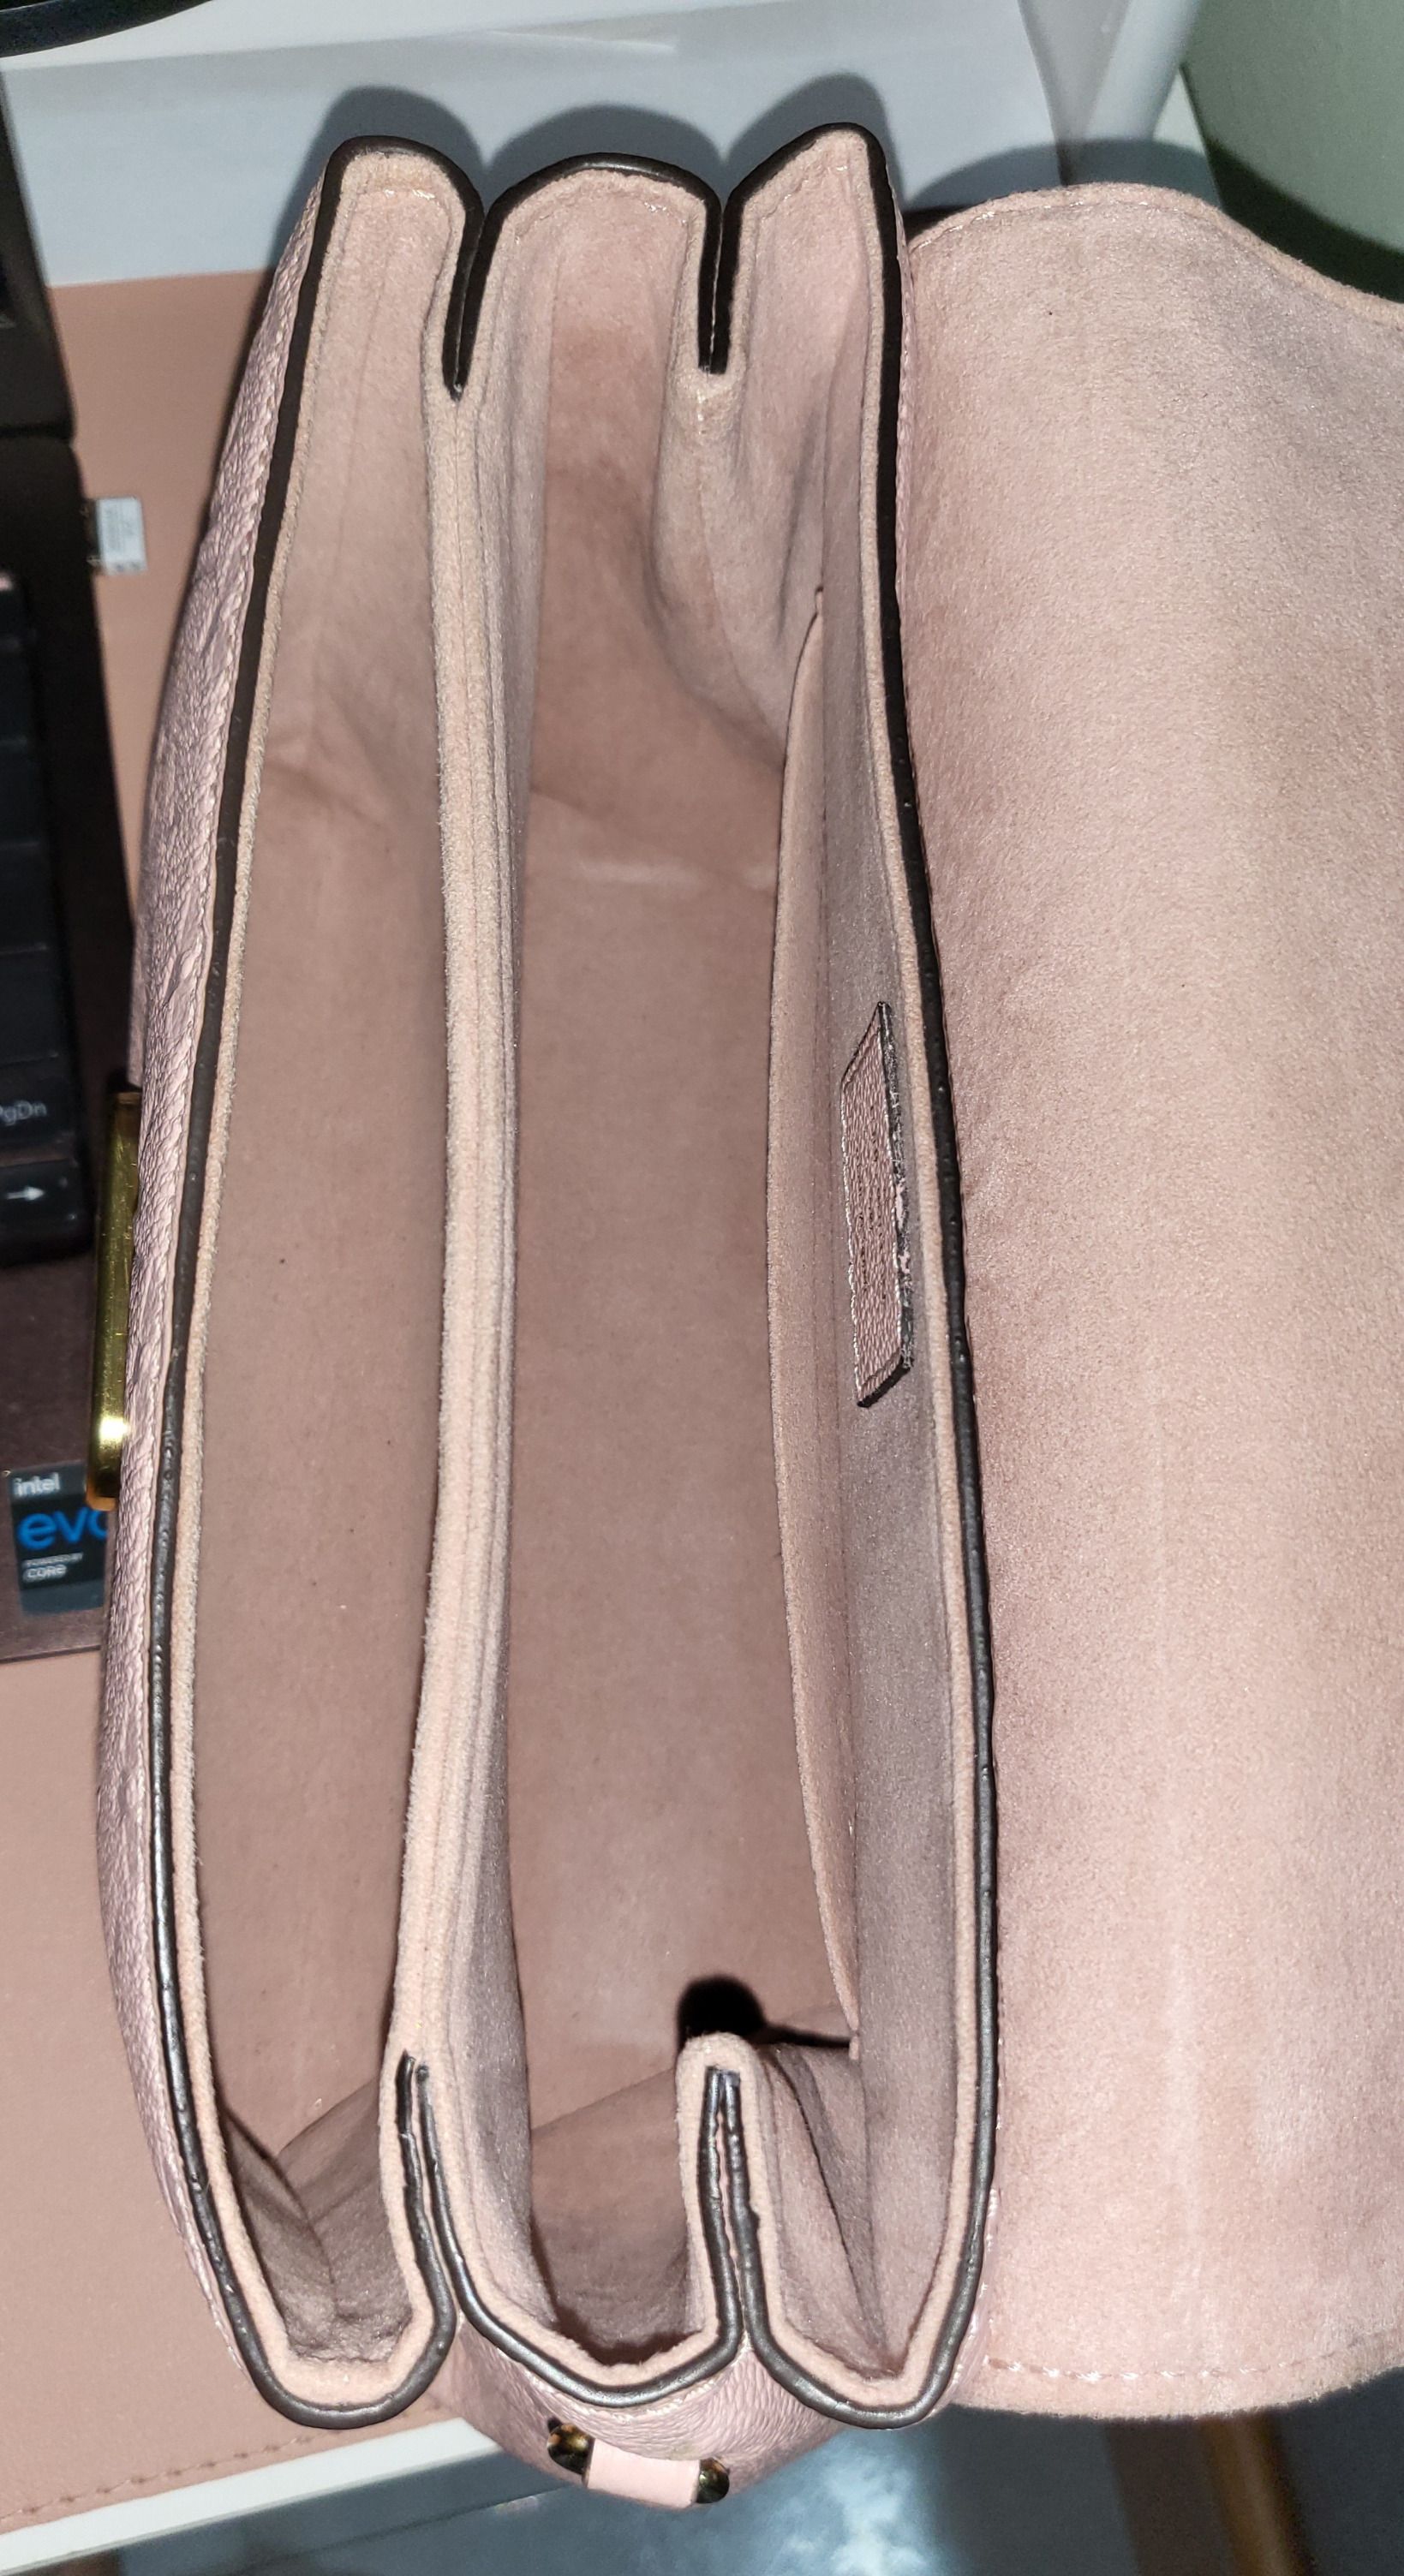 Louis Vuitton Georges Handbag Monogram Empreinte Leather BB Pink 72818209